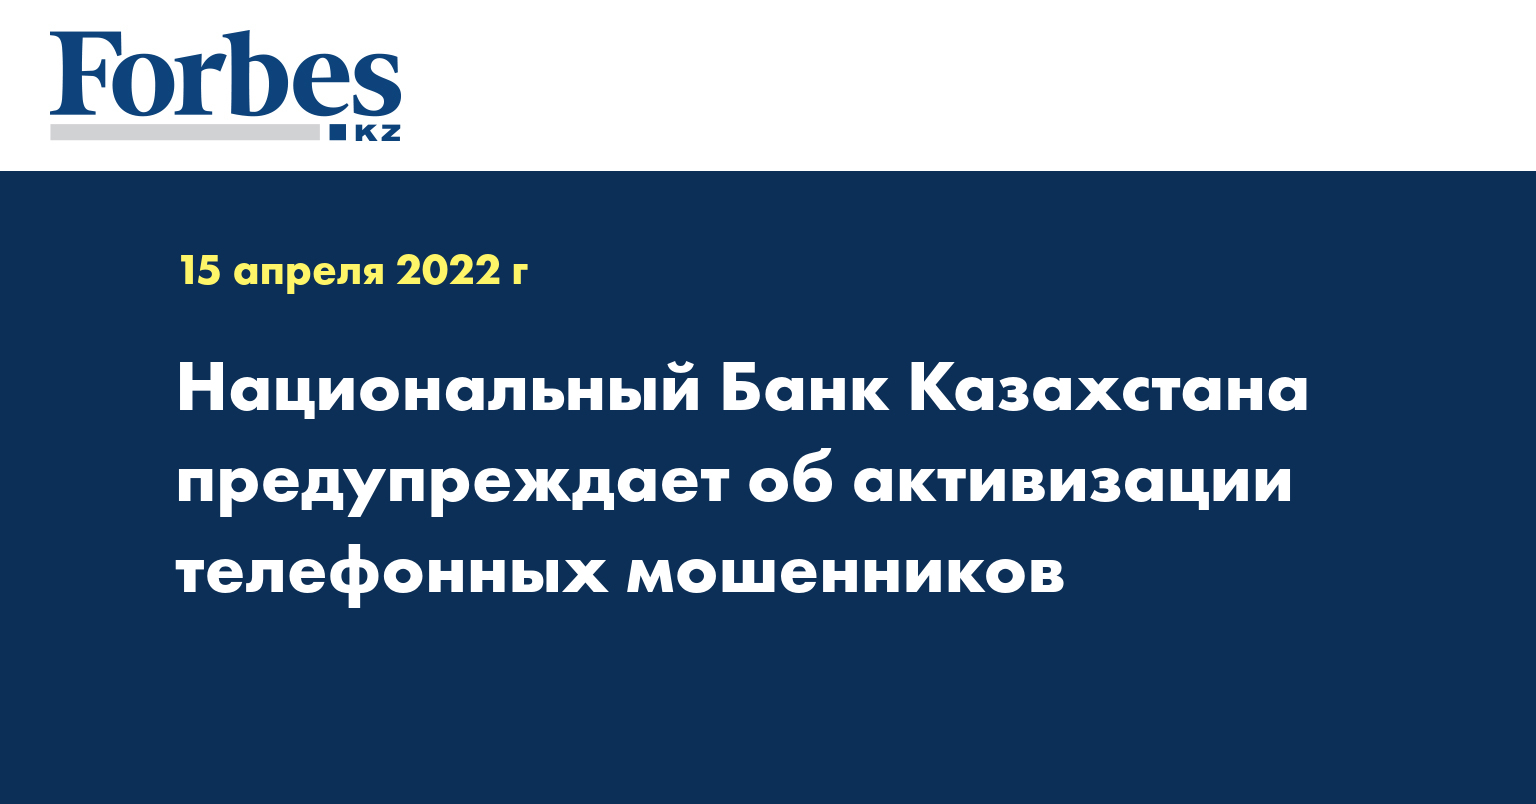 Национальный Банк Казахстана предупреждает об активизации телефонных мошенников